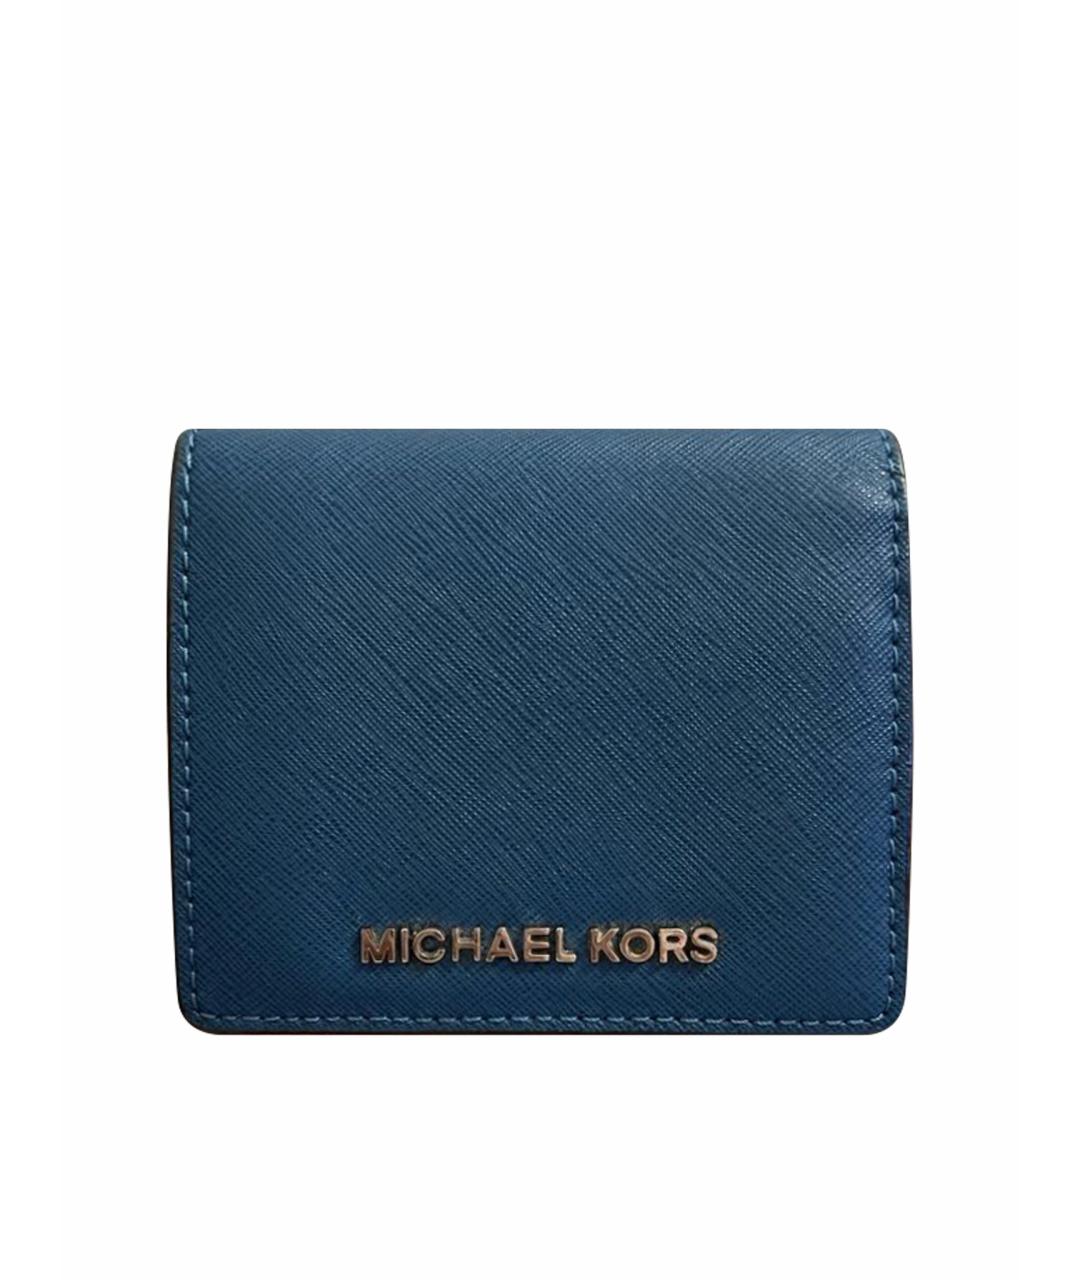 MICHAEL KORS Синий кожаный кошелек, фото 1